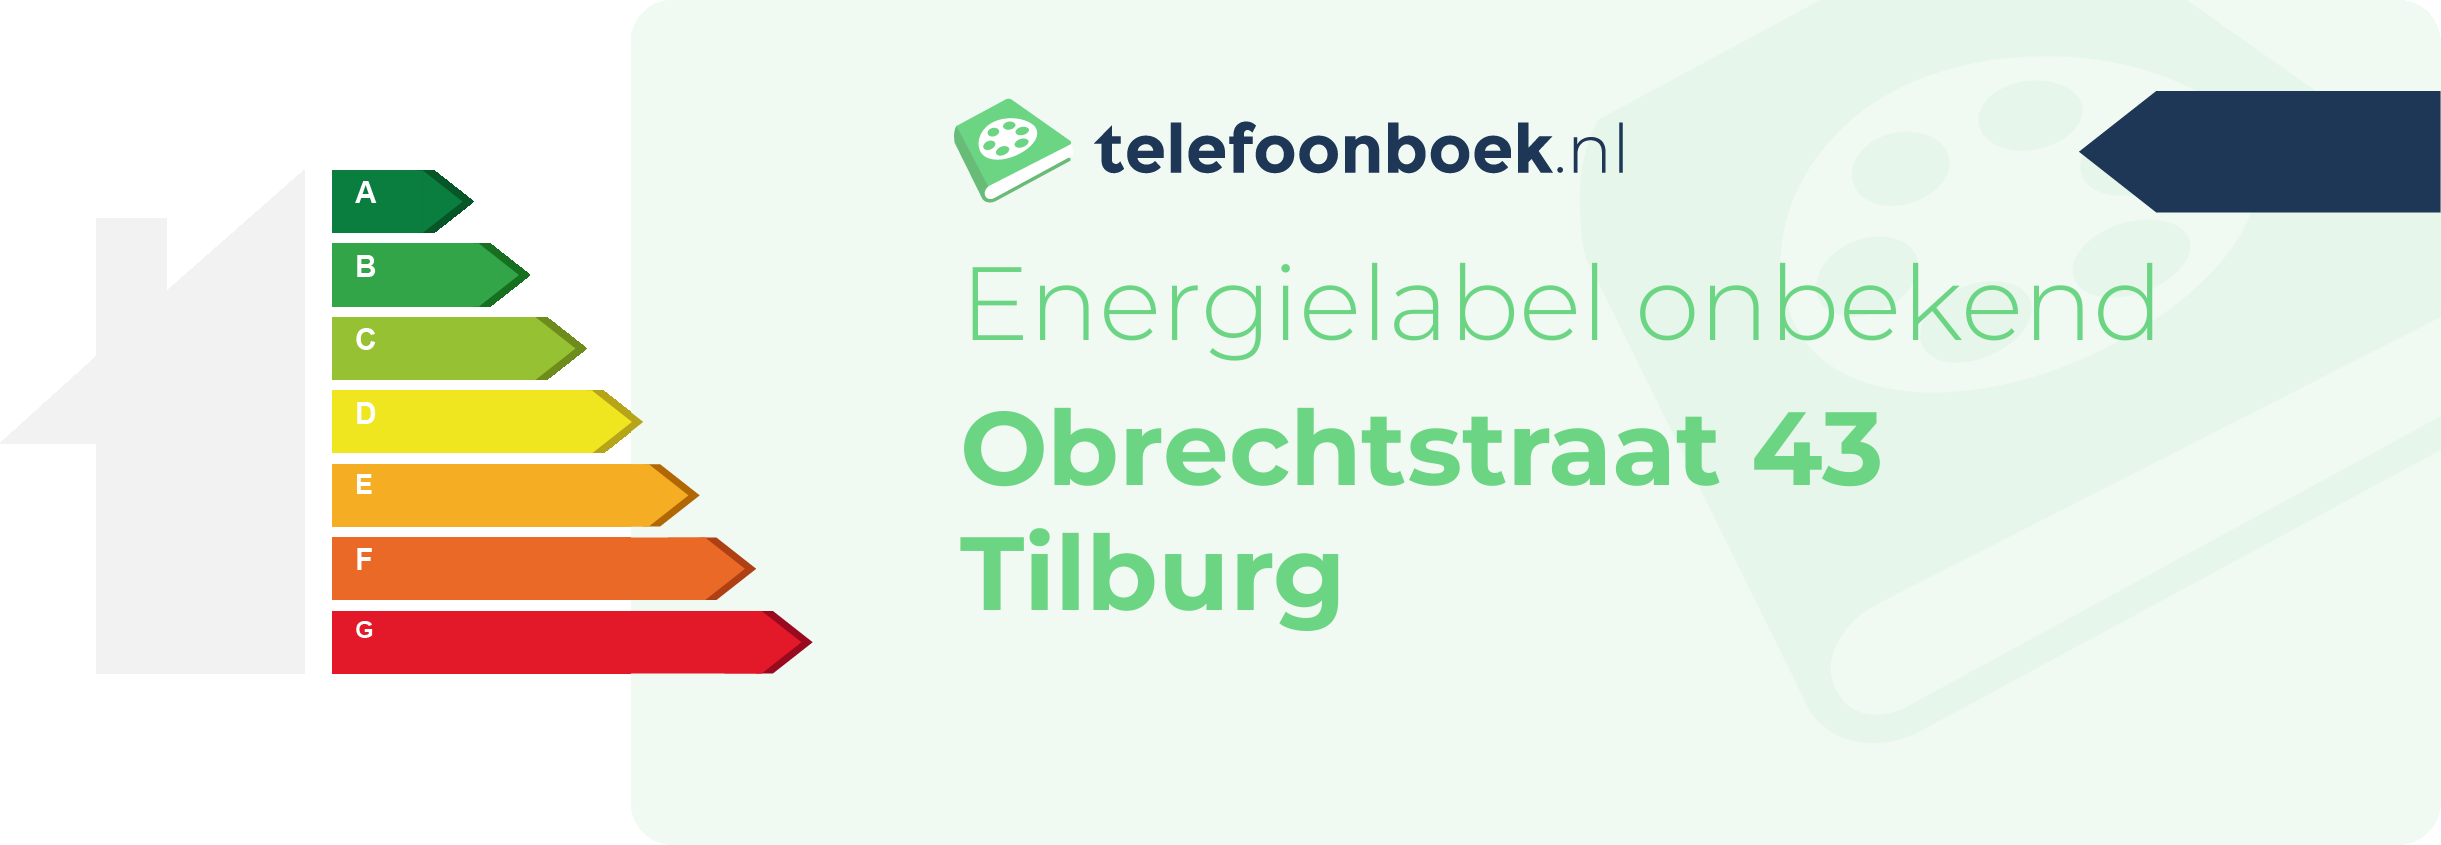 Energielabel Obrechtstraat 43 Tilburg